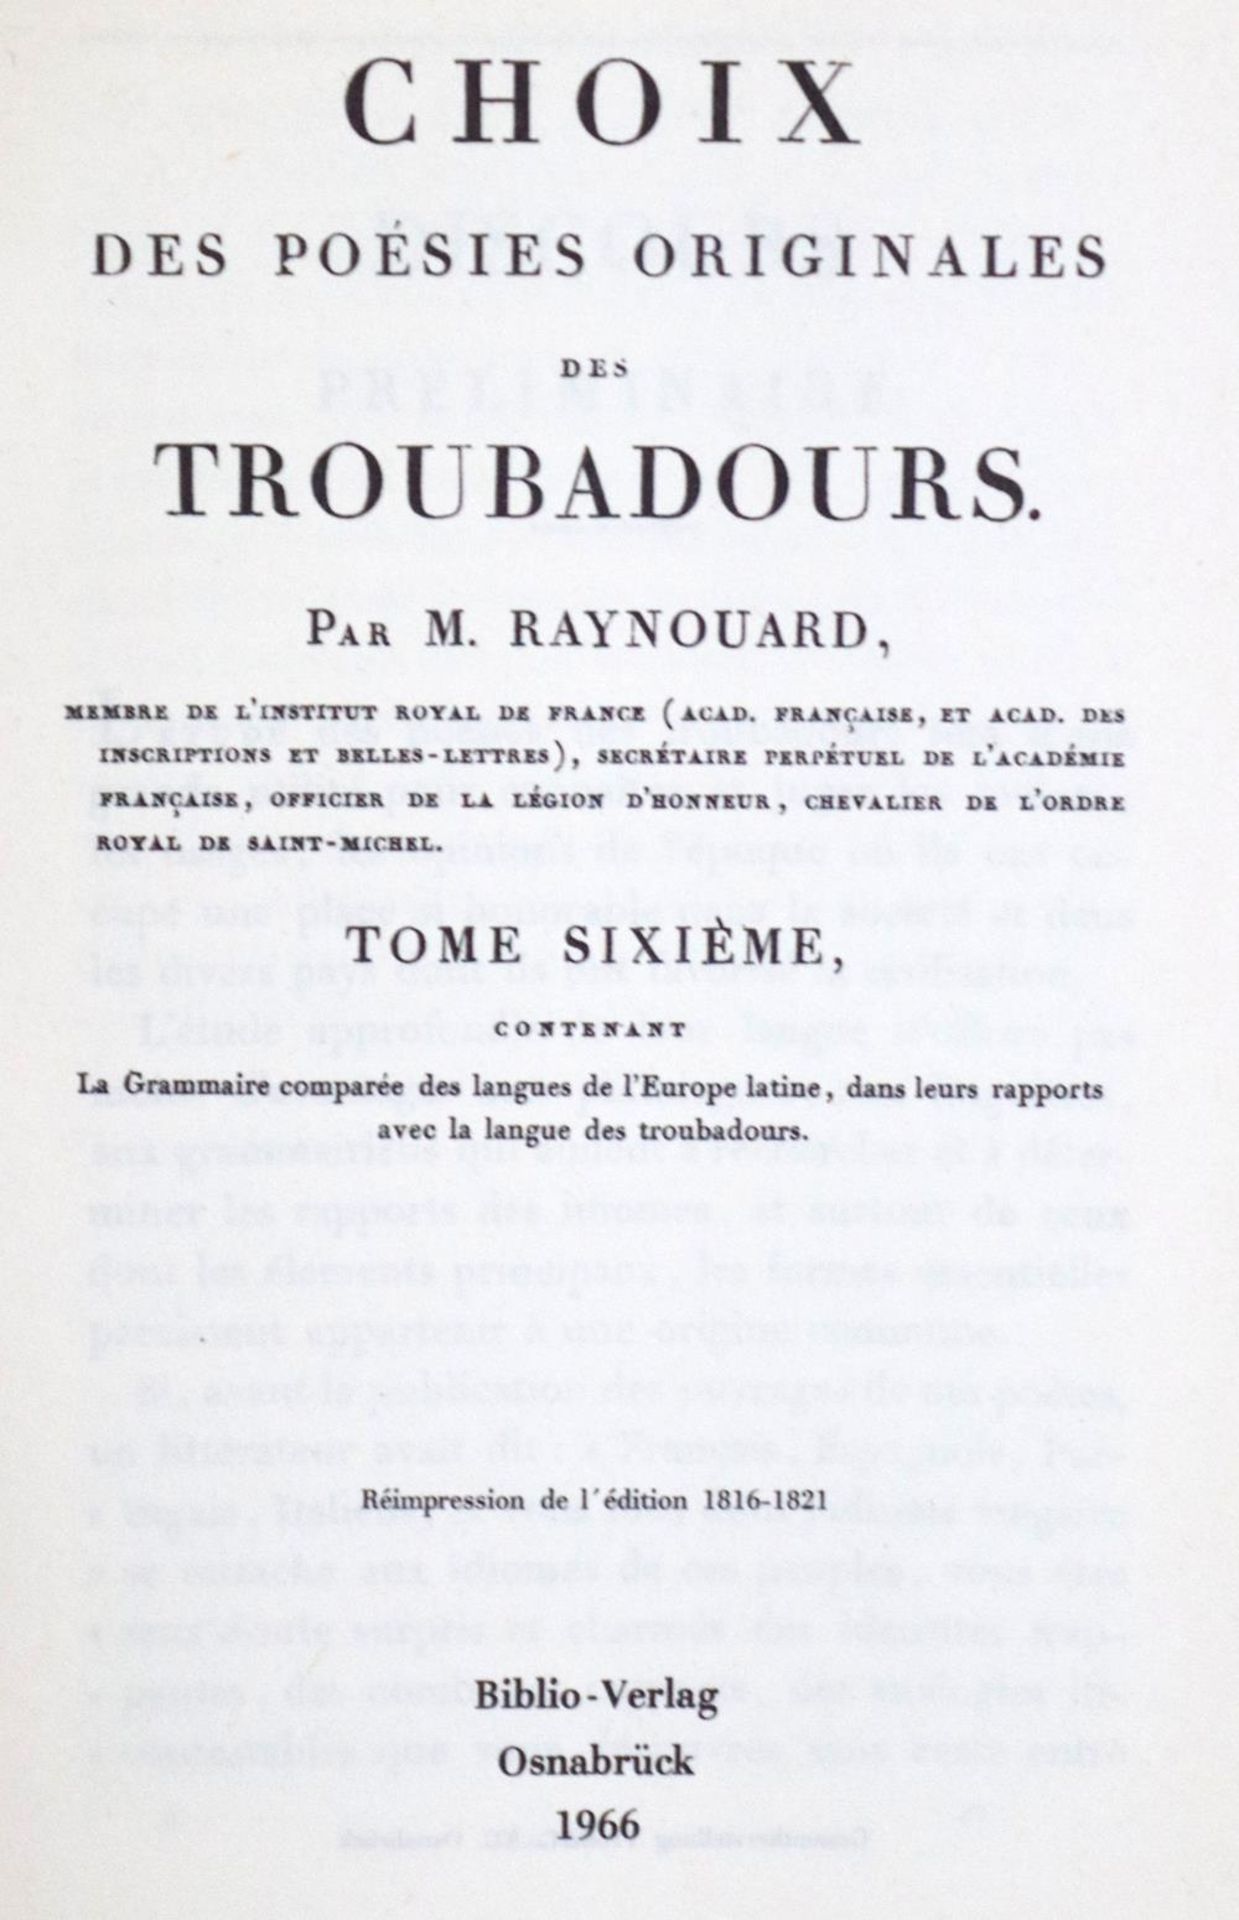 Raynouard,J.F.M.Choix des poesies originales des troubadours. 6 Bde. Reprint der Aufl. 1816-1821.